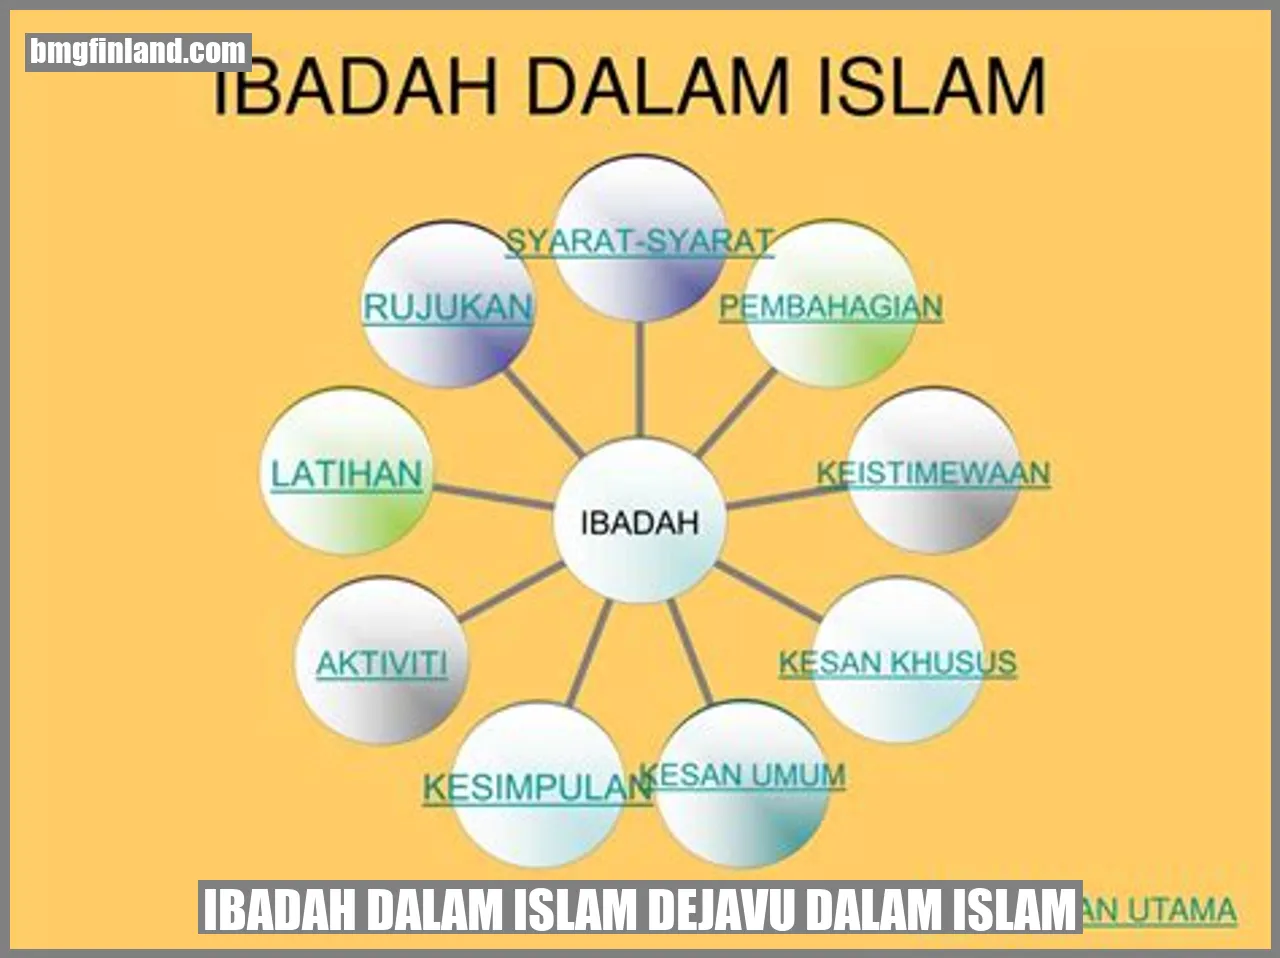 Ibadah dalam Islam dejavu dalam islam